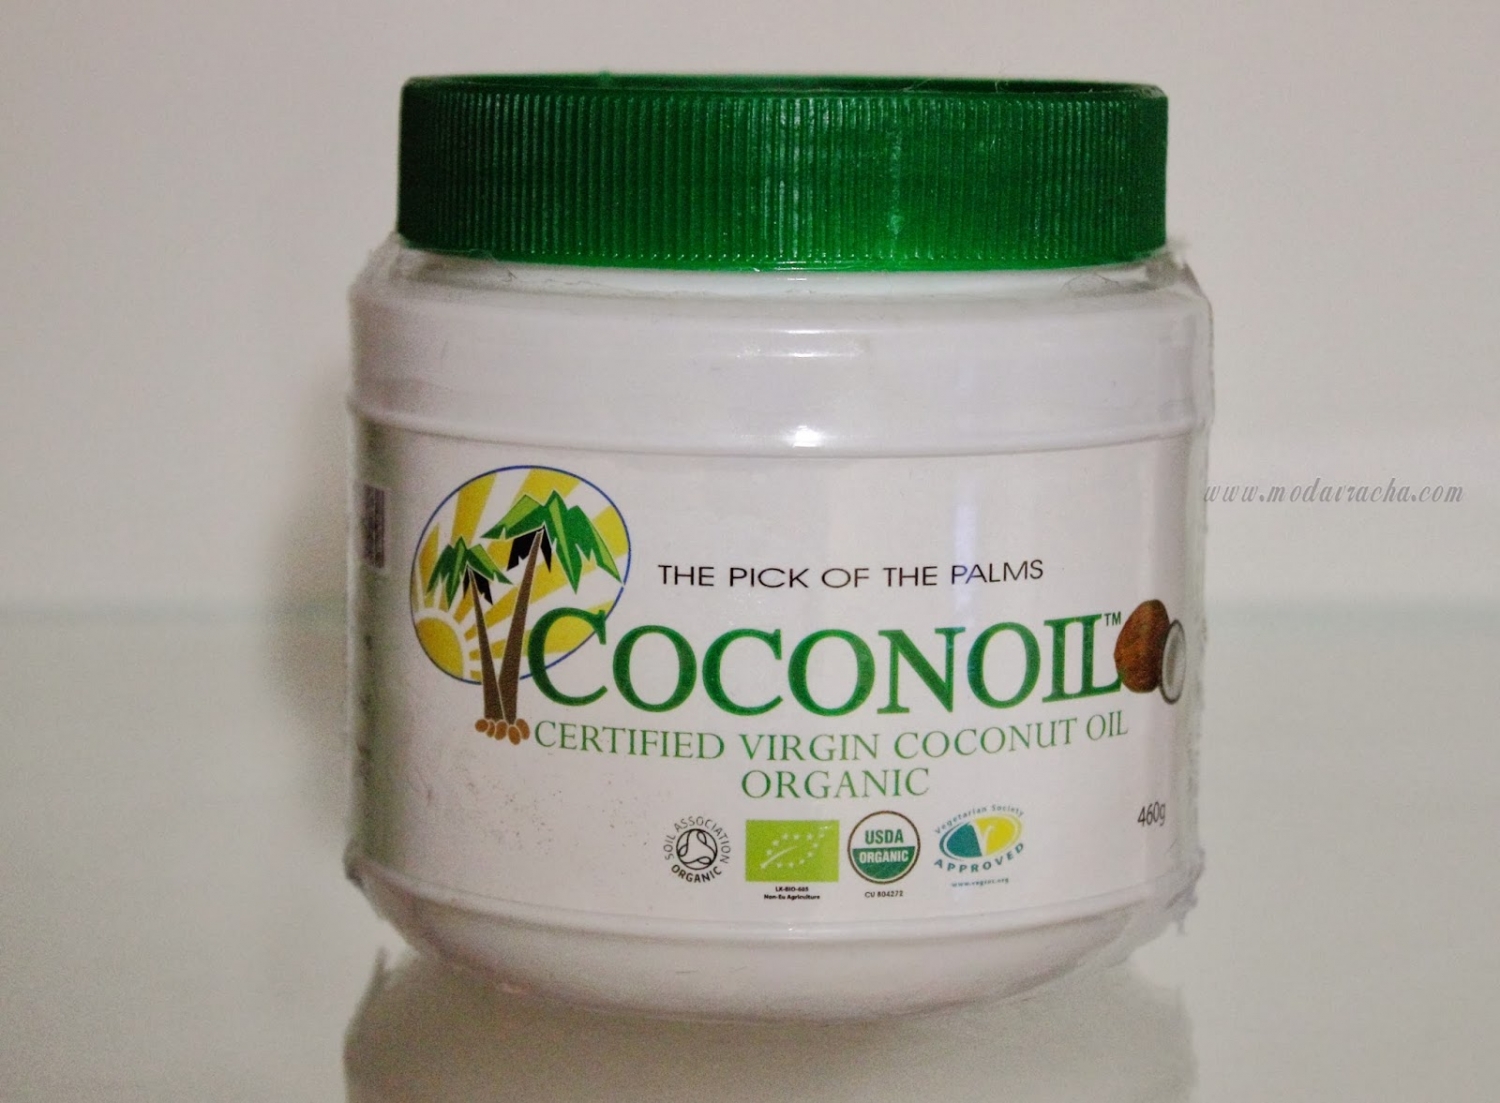 Coconoil coconut oil review